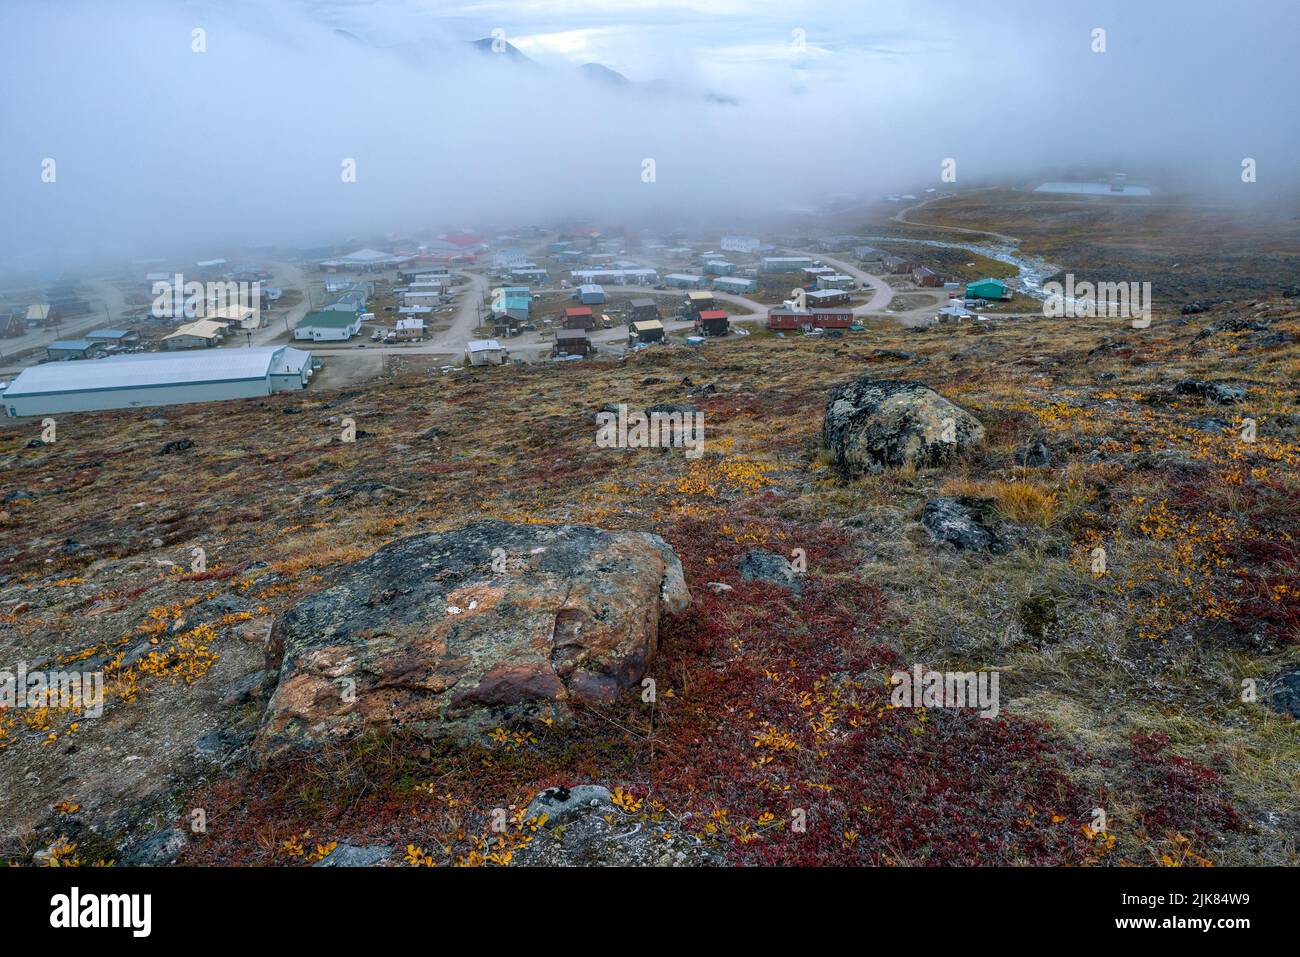 Pangnirtung, Canada - 09.03.2019 : vue d'une communauté inuite éloignée de Pangnirtung, Nunavut, Canada. Tôt le matin avant le lever du soleil dans le fjord de Pangnirtung Banque D'Images